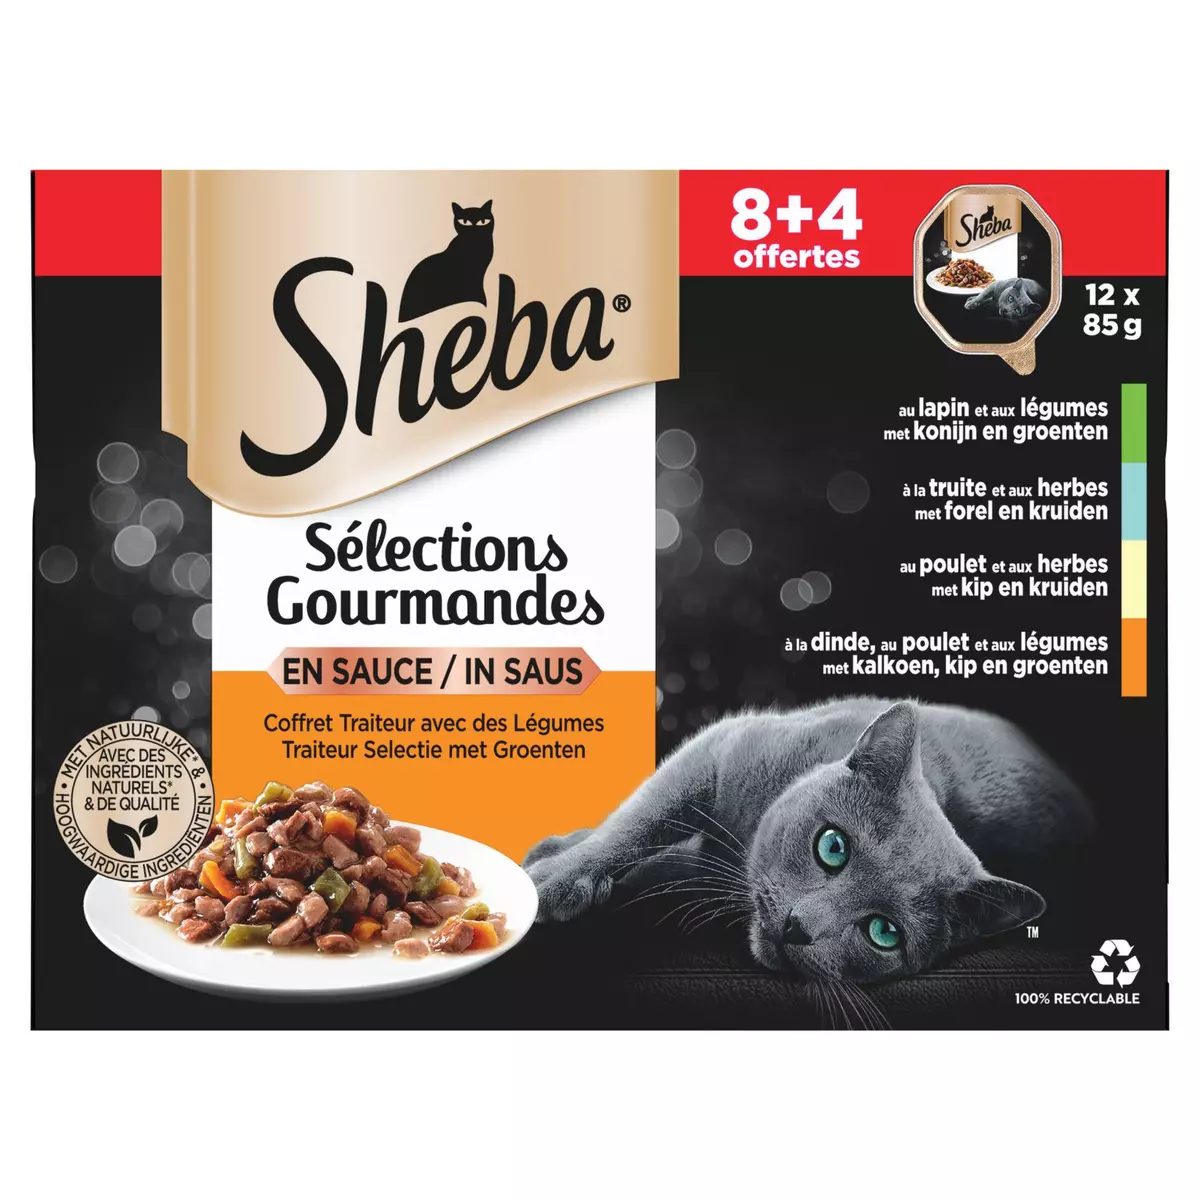 SHEBA Coffret du boucher avec des légumes sauces gourmandes pour chats 8+4 offerts 12x85g